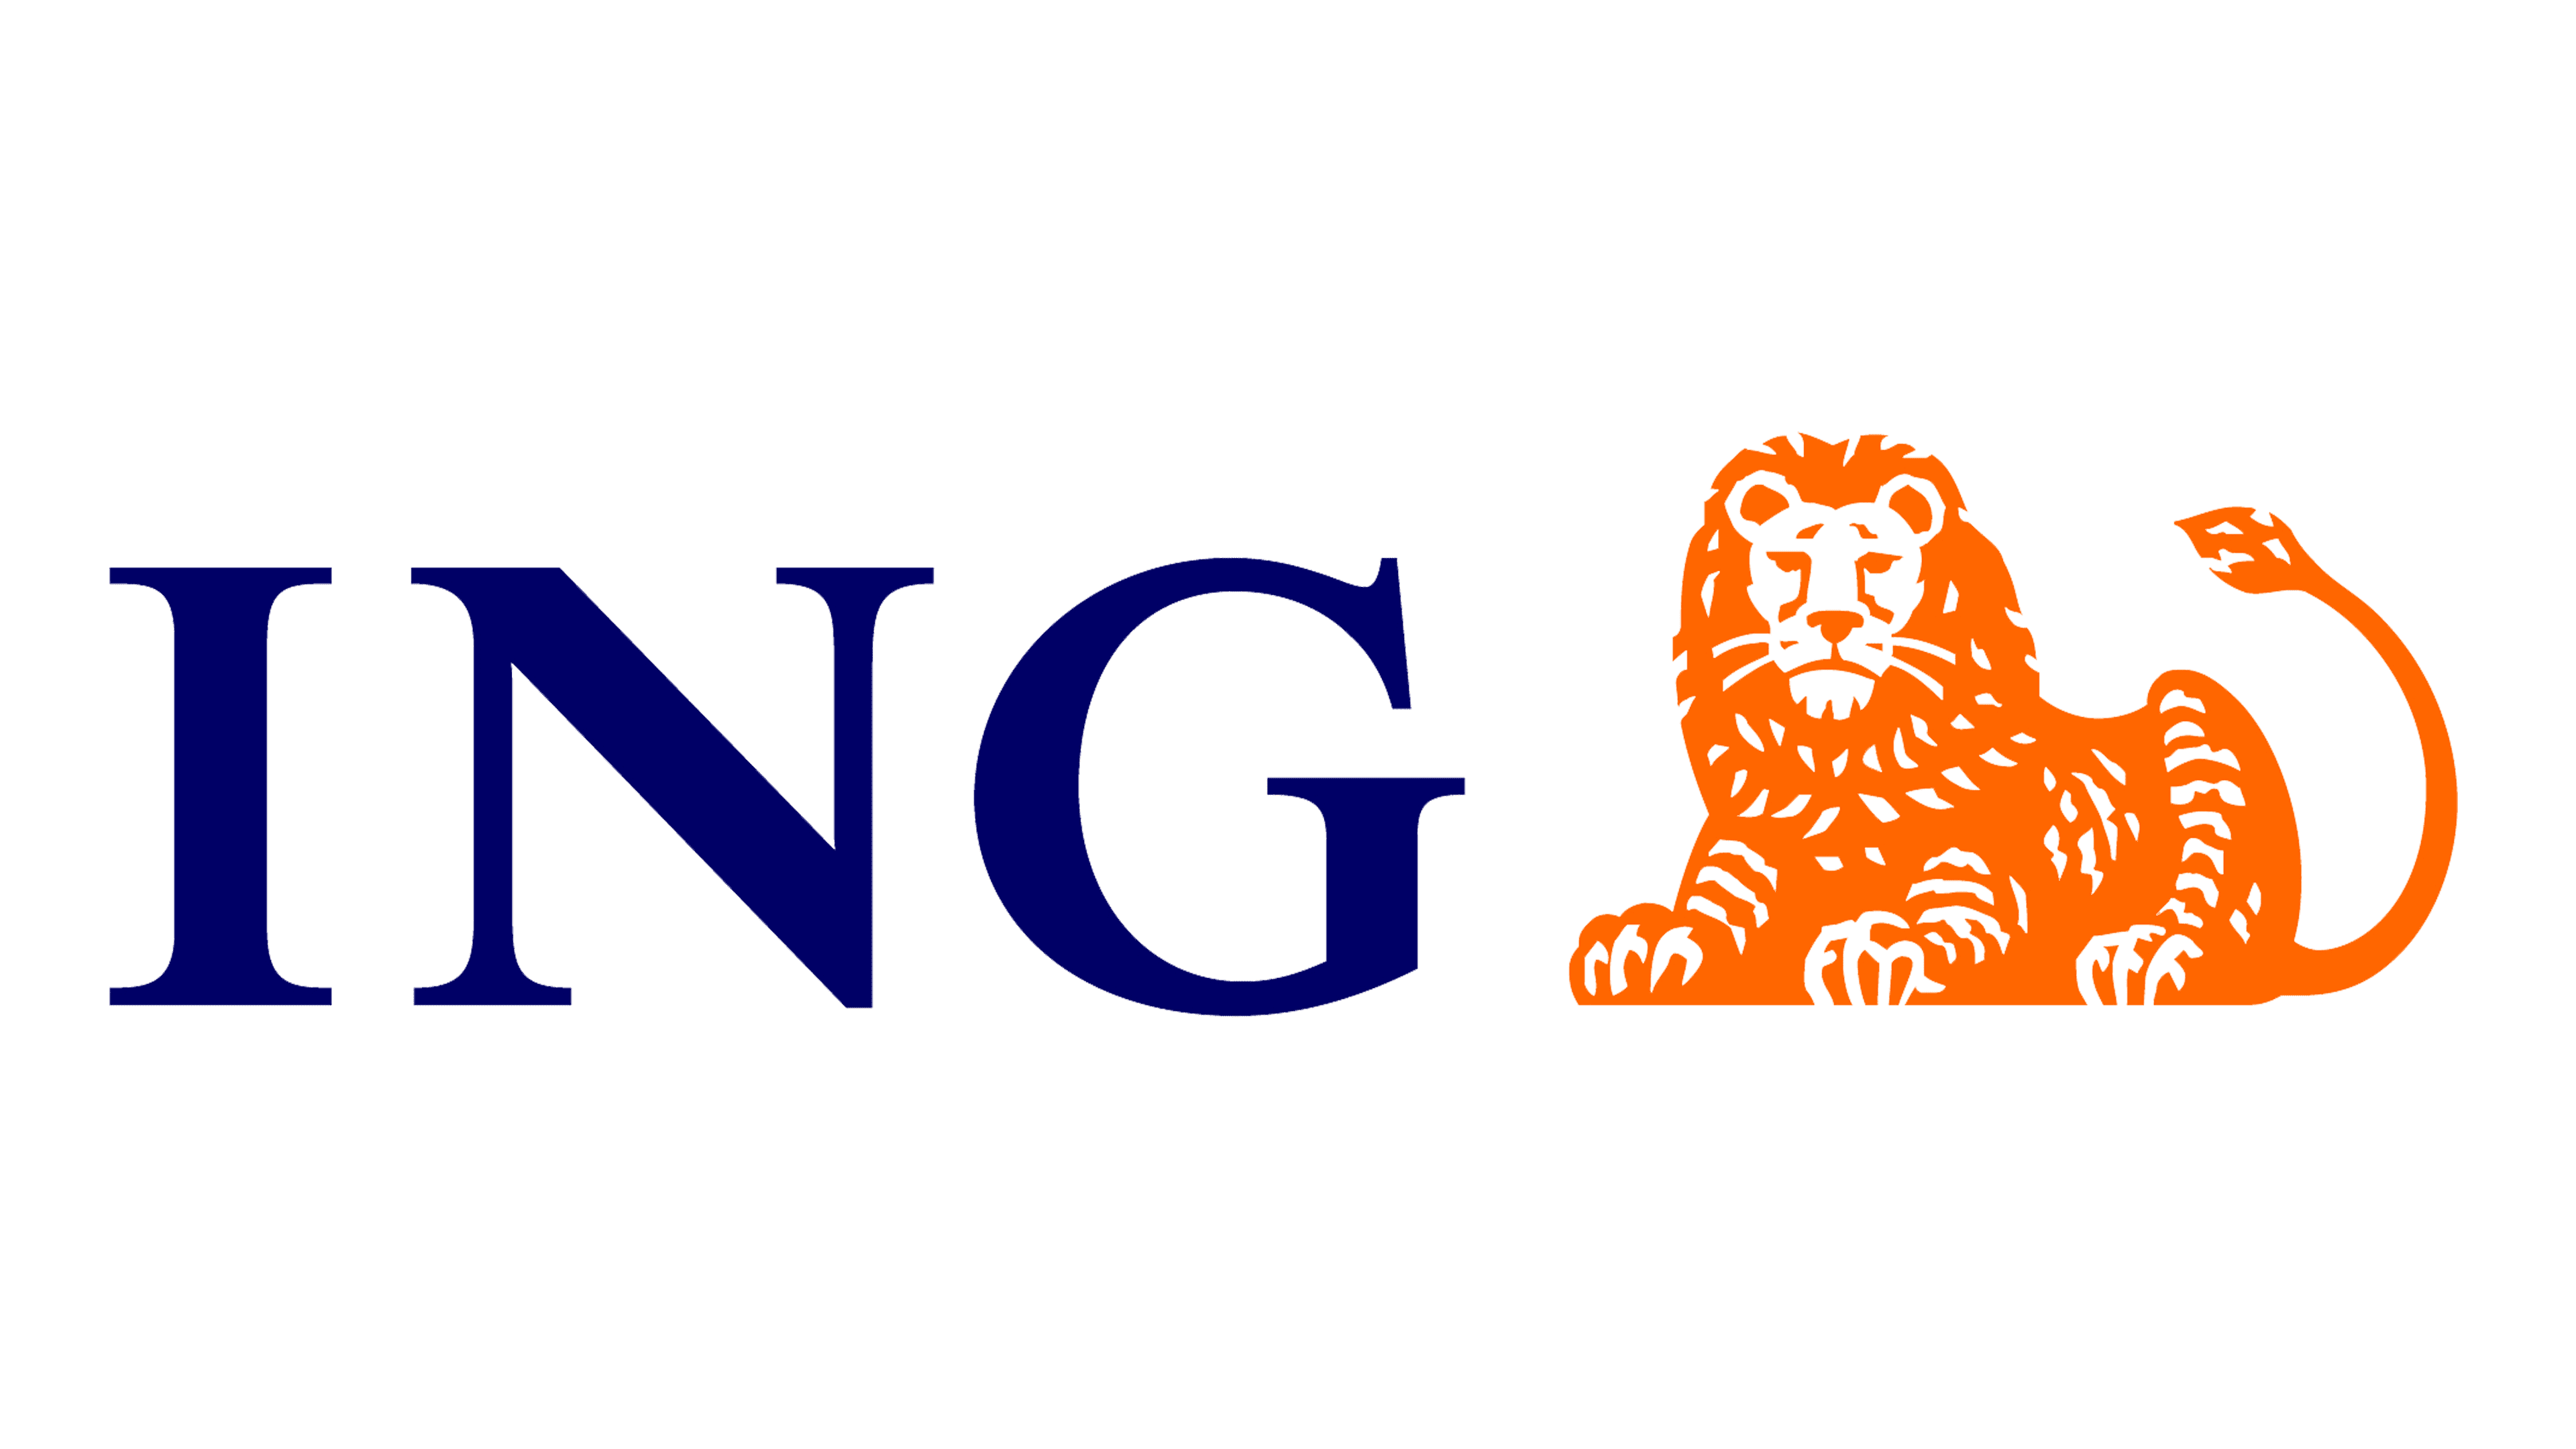 ING-logo-normal